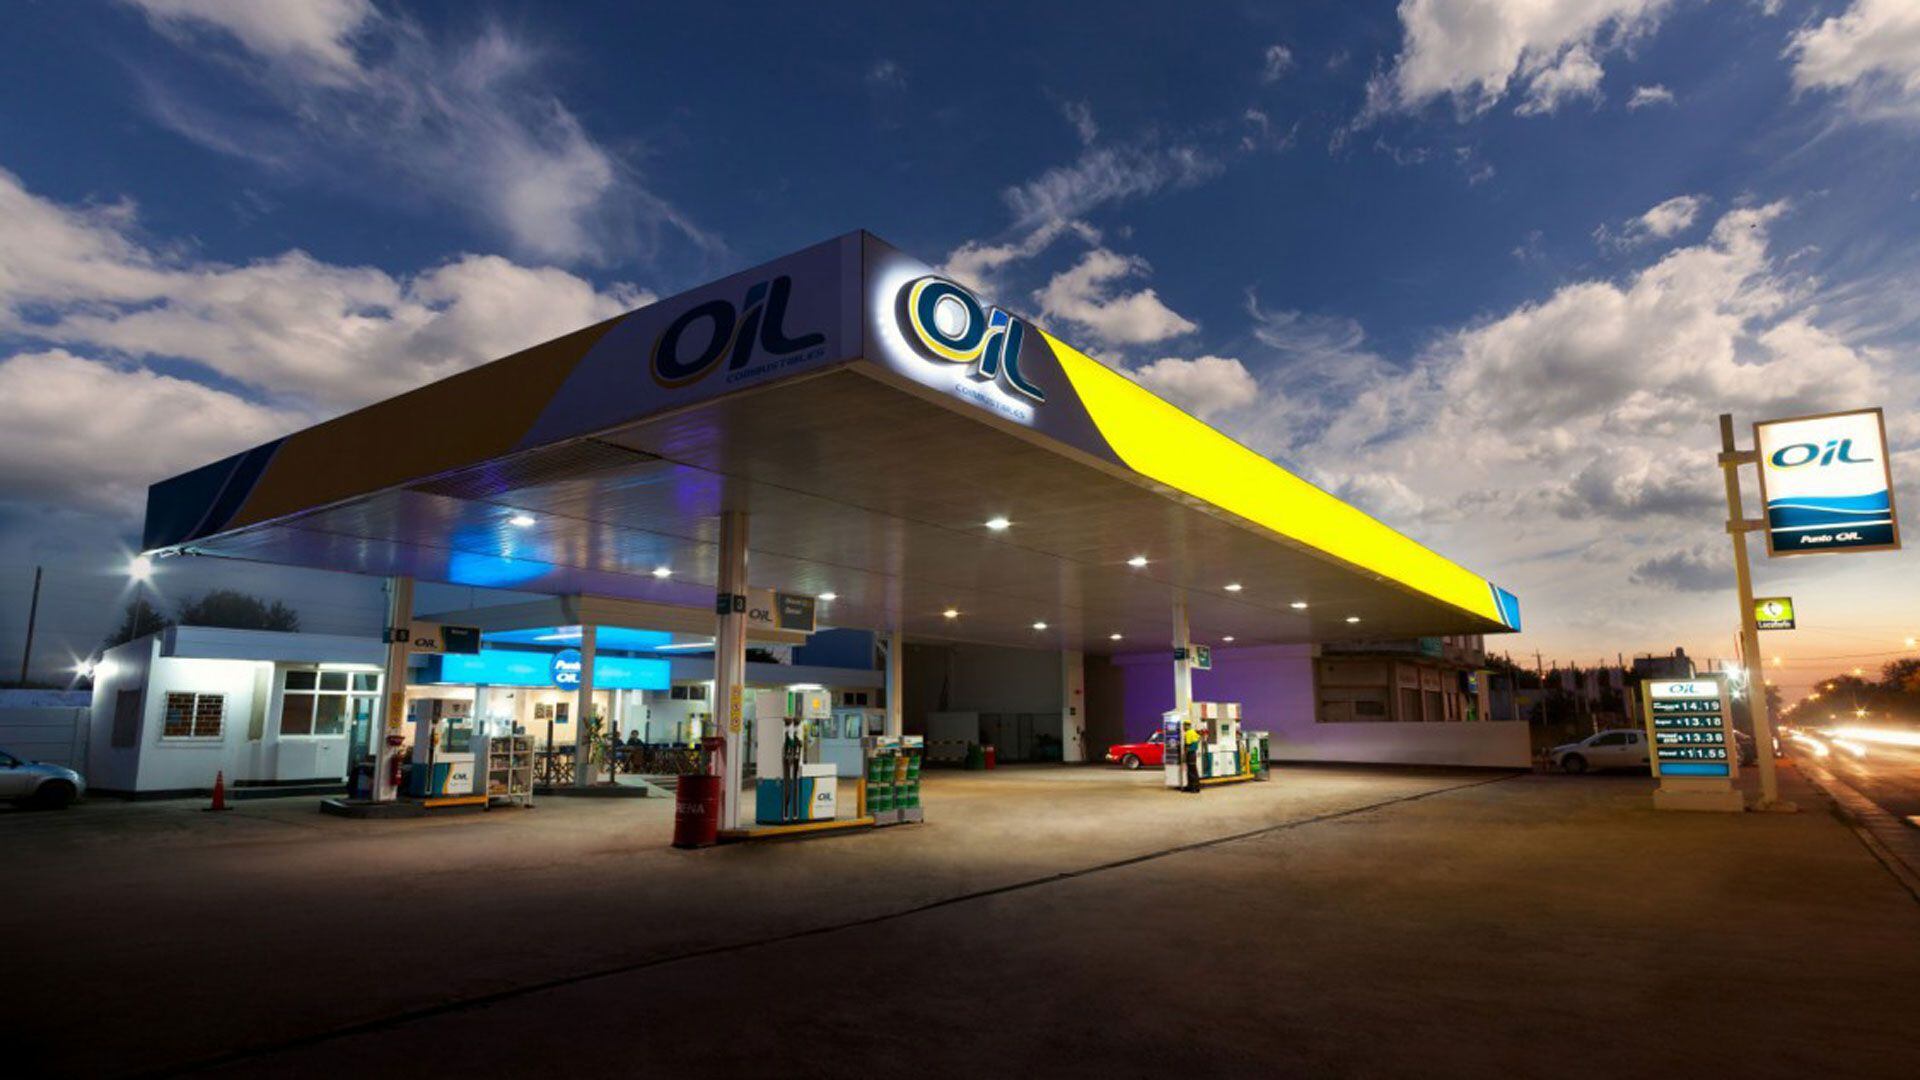 La empresa Oil Combustibles estuvo en proceso de quiebra y fue recuperada tras un extenso concurso.